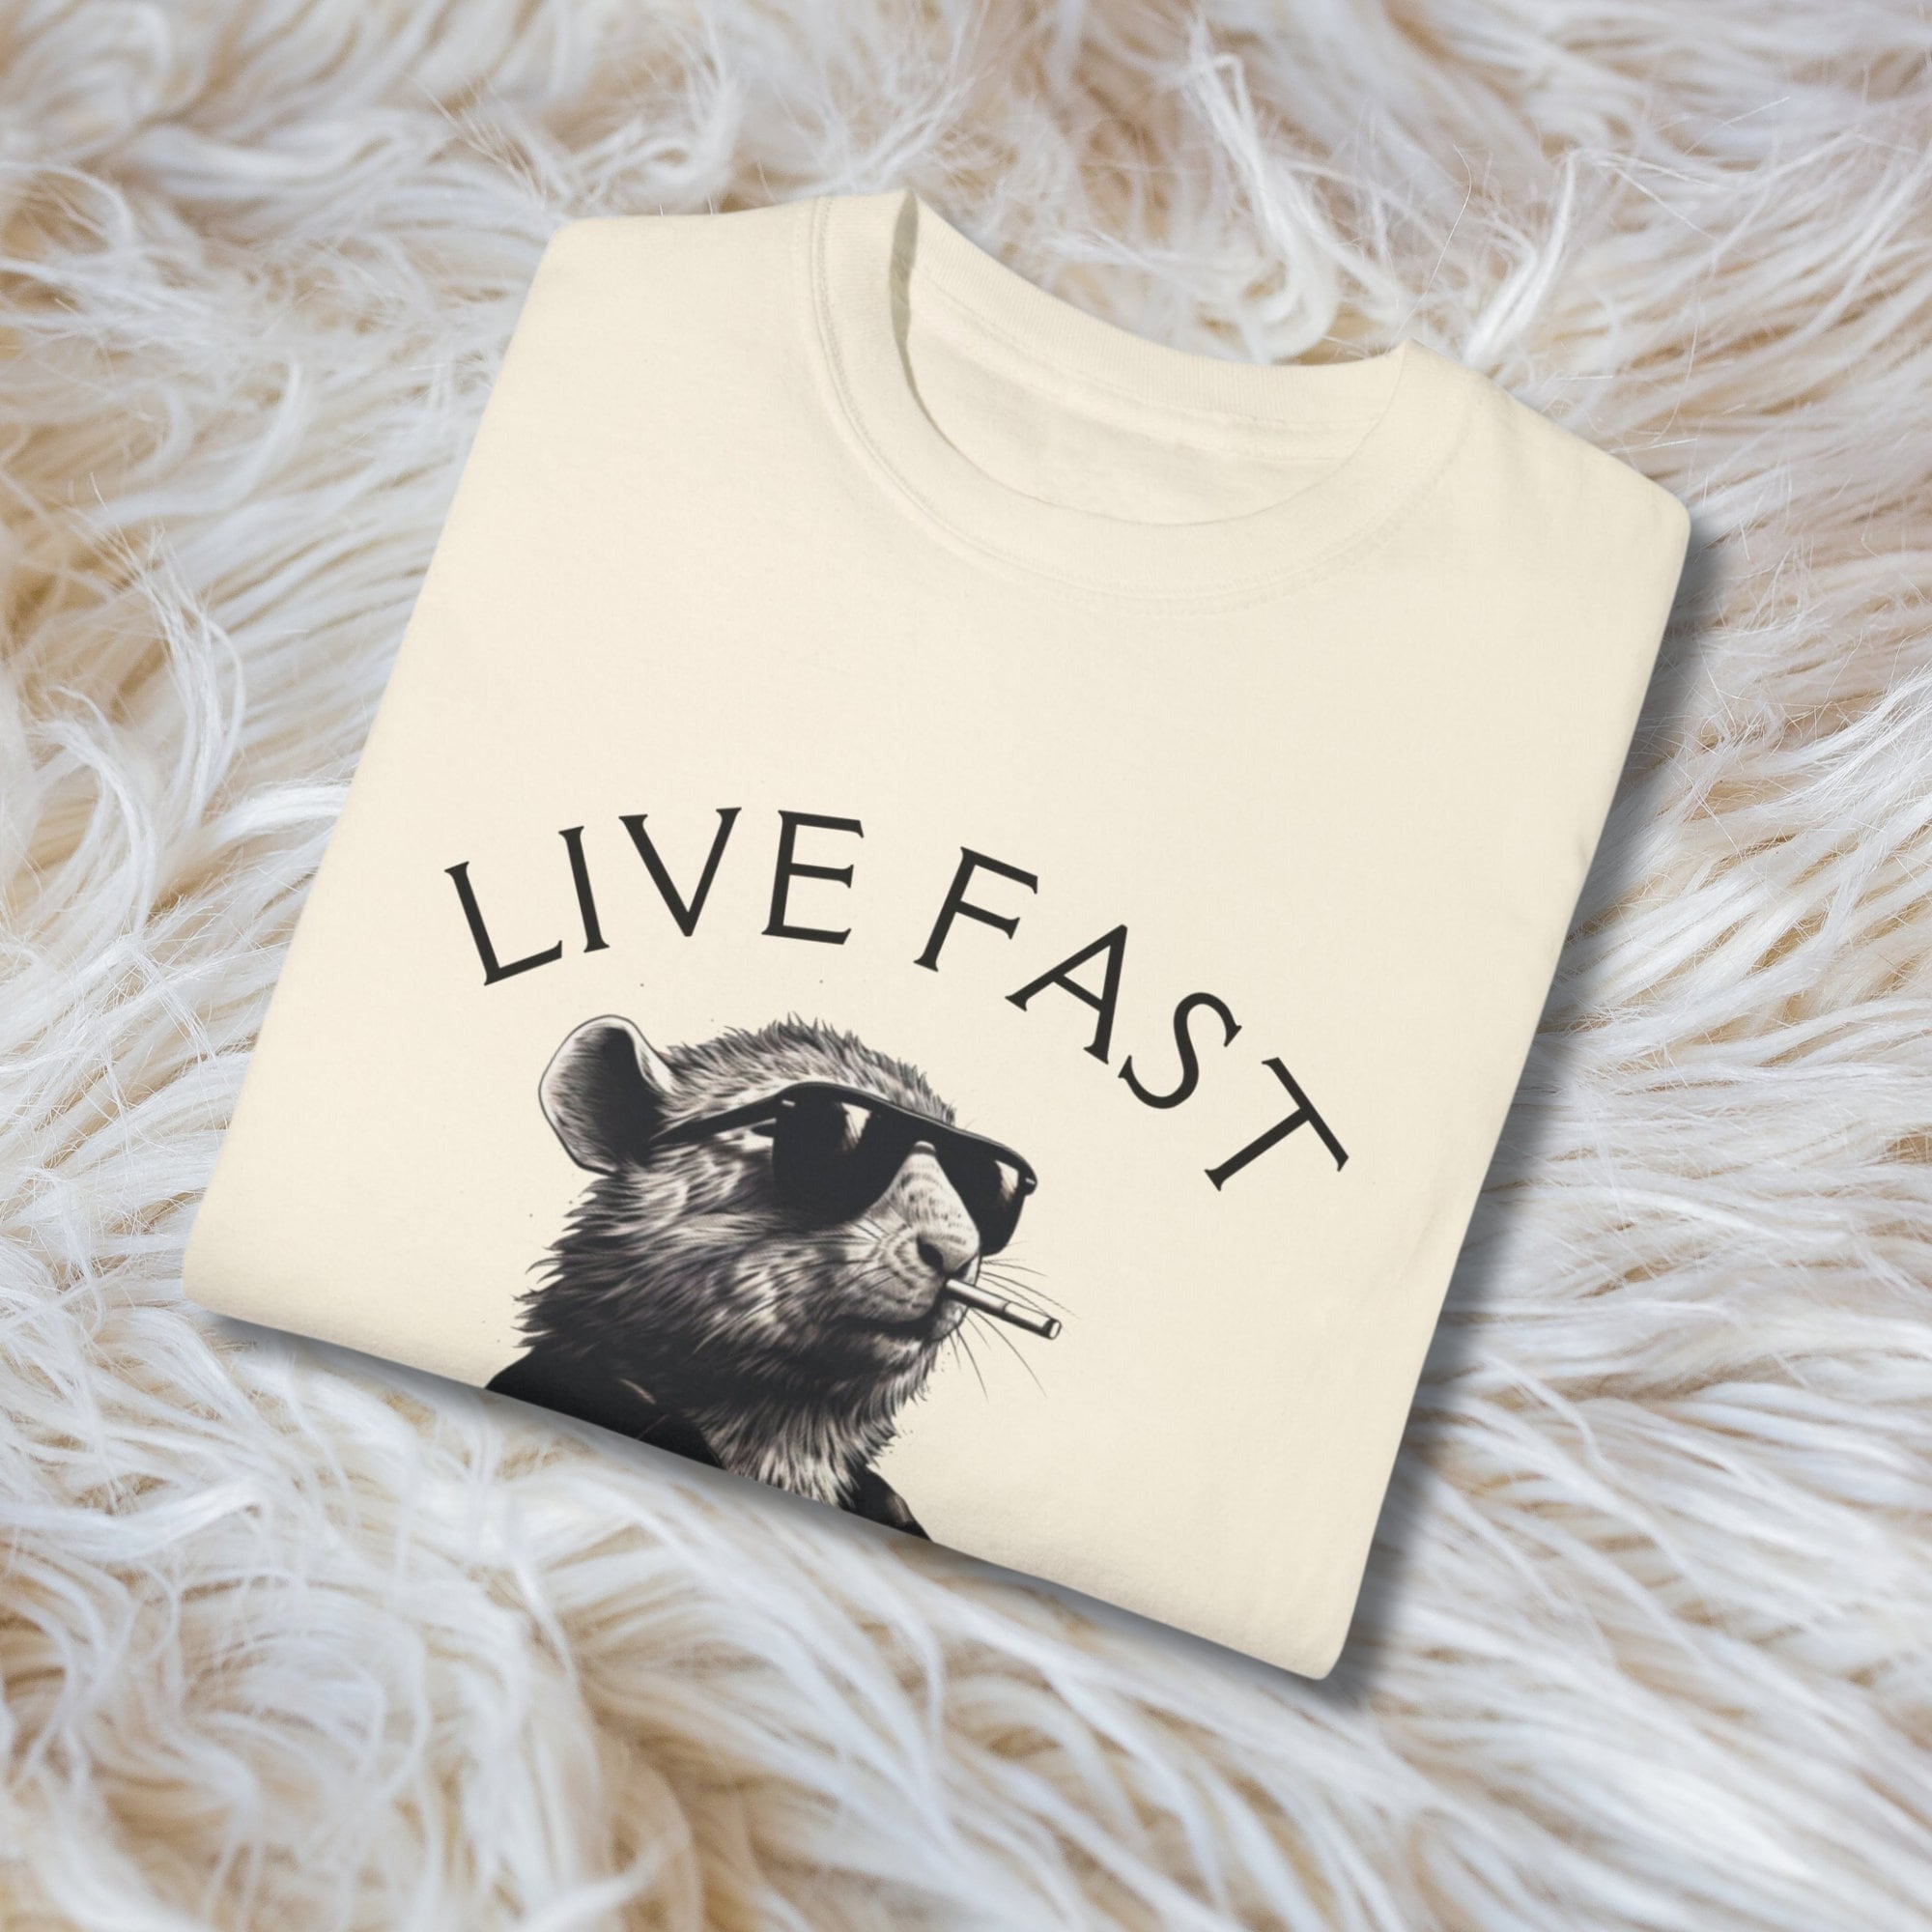 Live Fast Eat Trash Tshirt